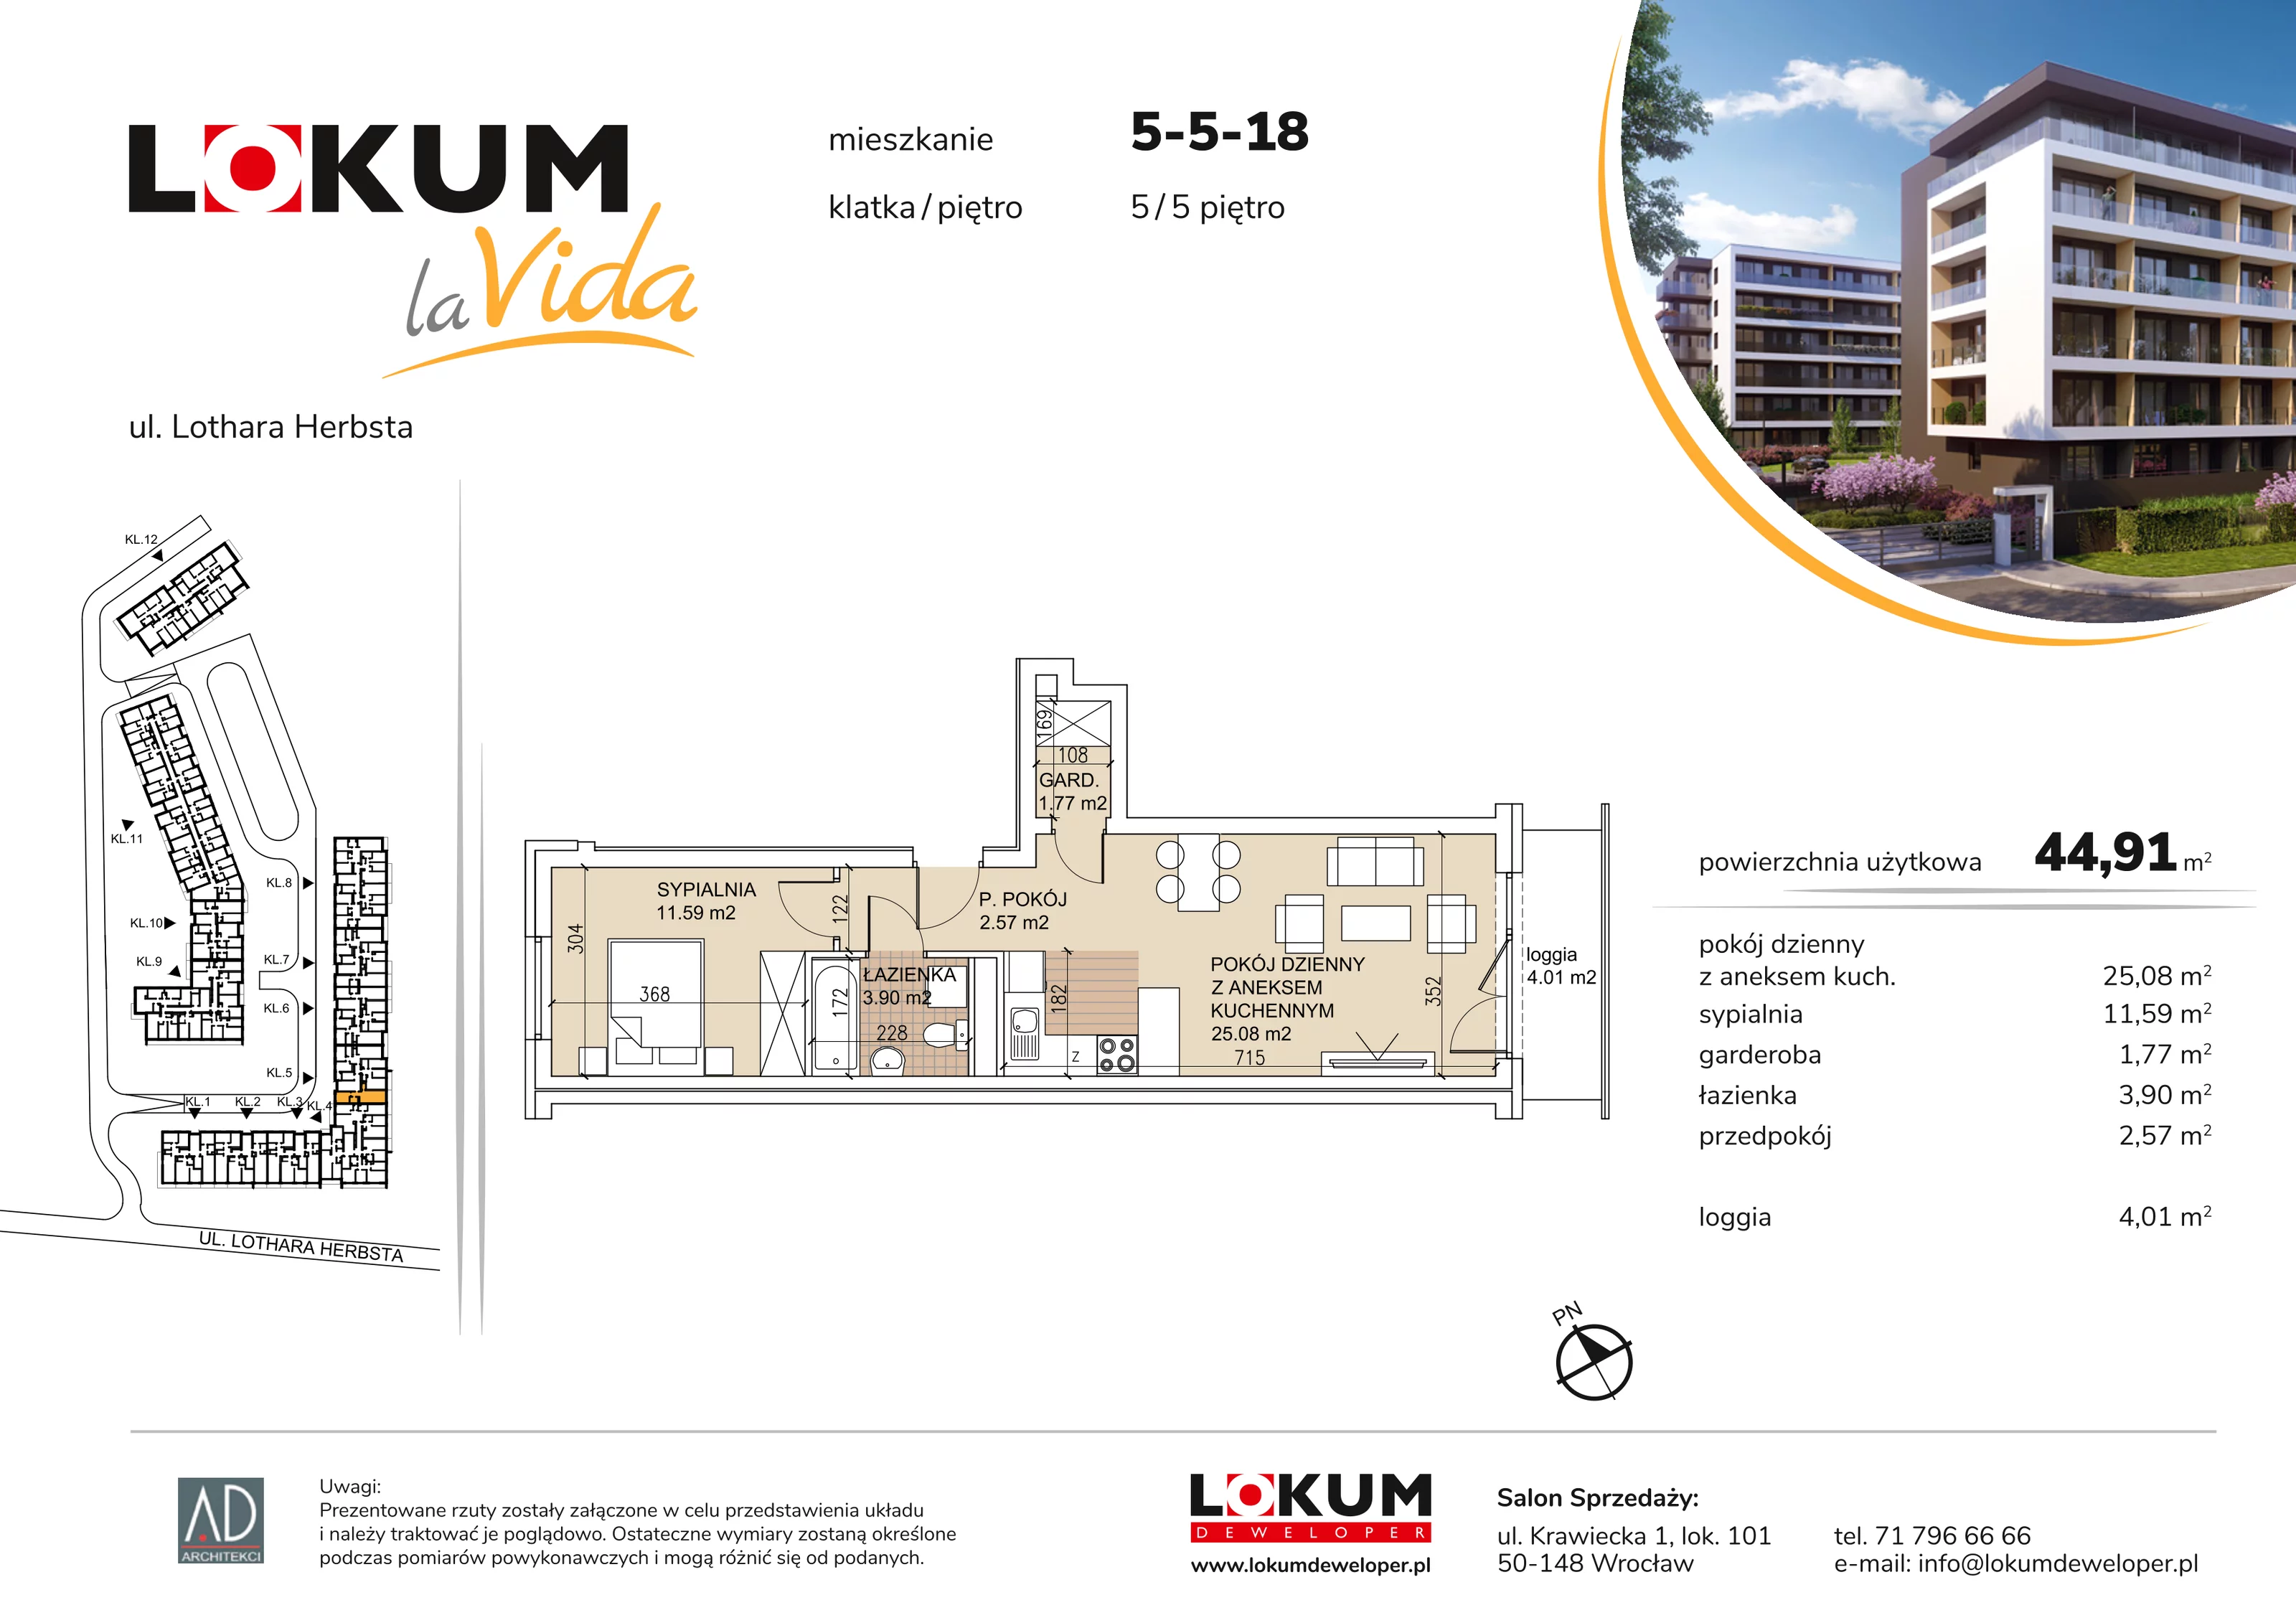 Mieszkanie 44,91 m², piętro 5, oferta nr 5-5-18, Lokum la Vida, Wrocław, Sołtysowice, ul. Lothara Herbsta